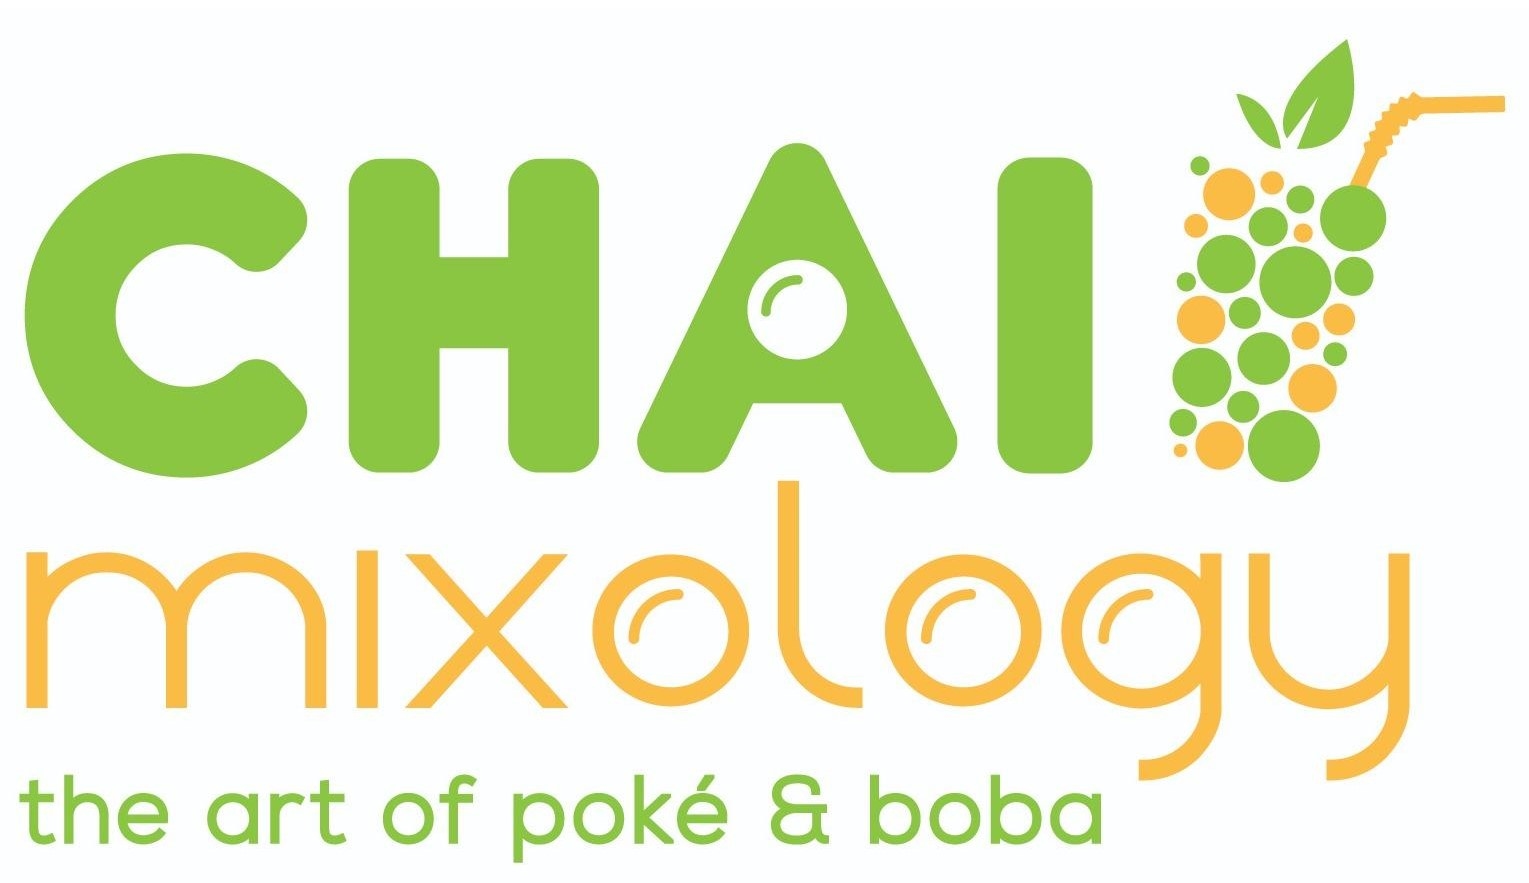 Chai Mixology